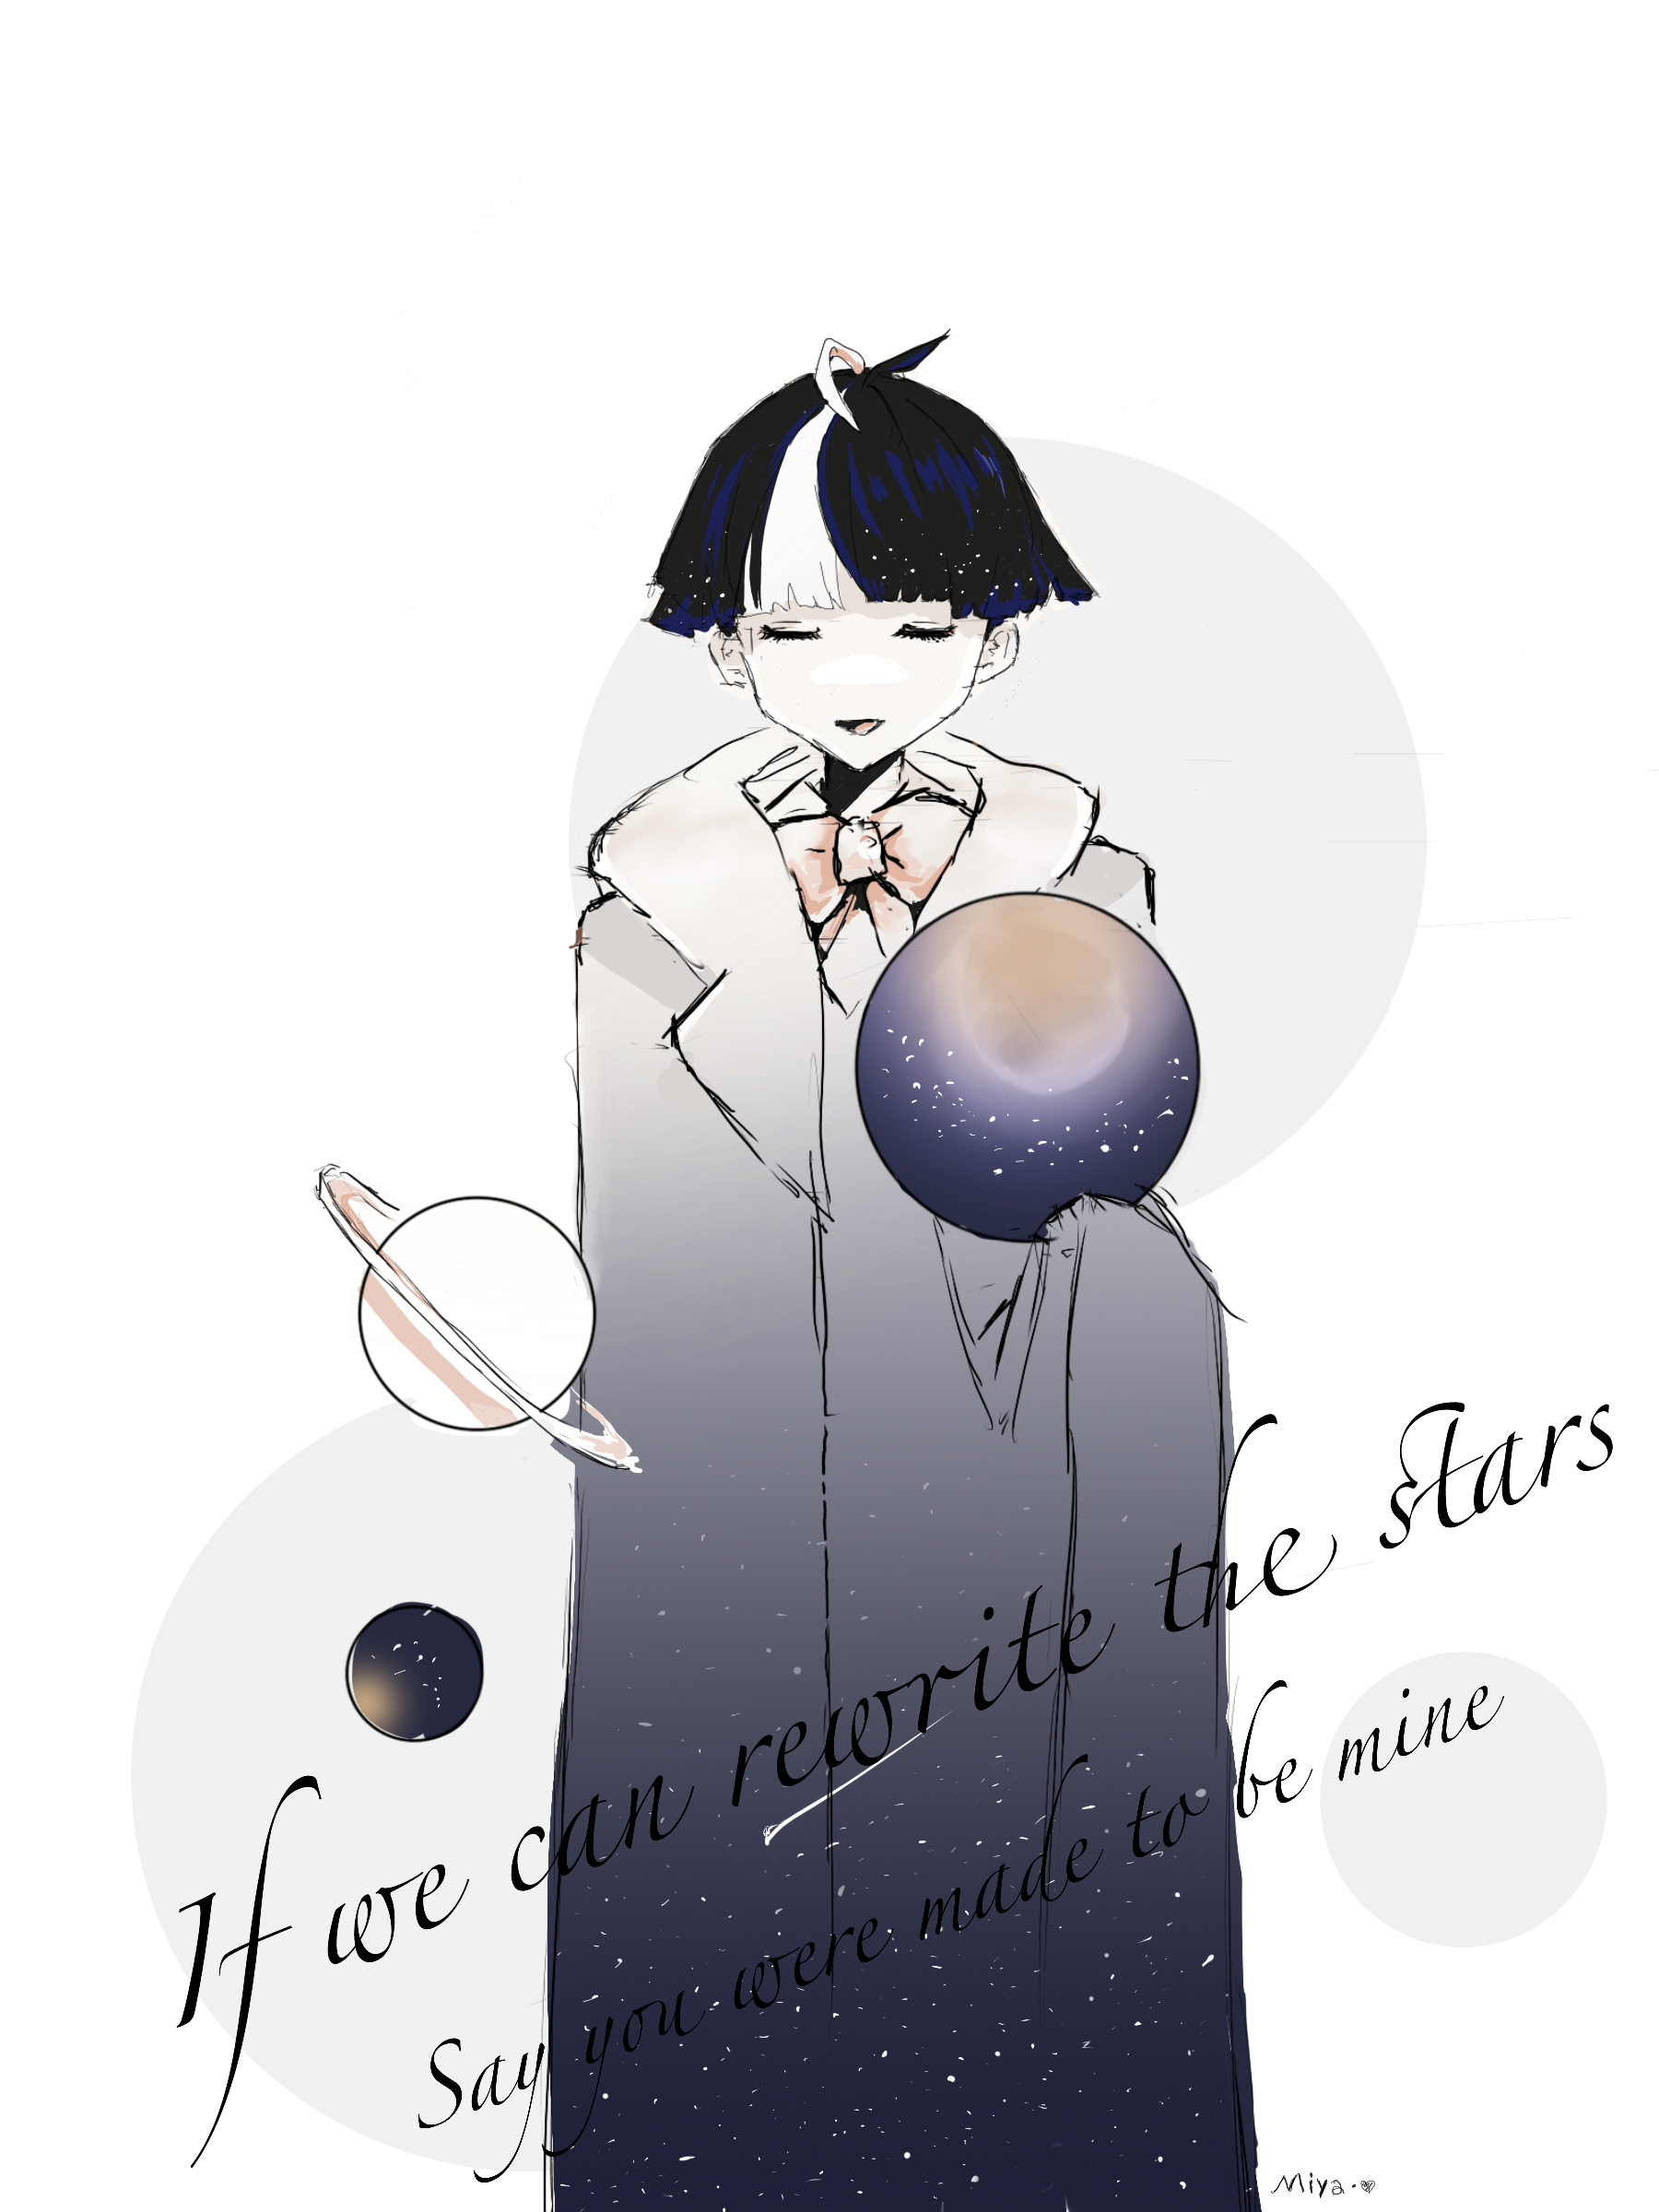 What if we rewrite stars？